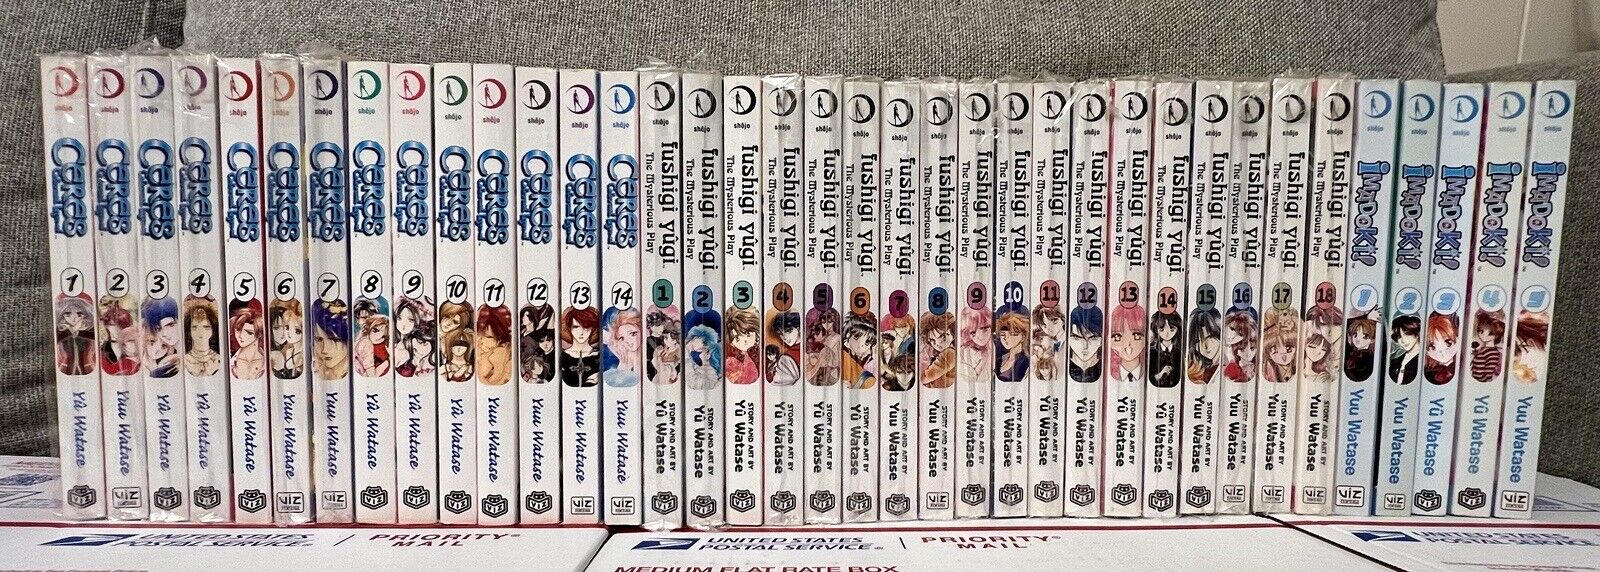 Fushigi Yugi + ceres celestial legend + Imadoki Complete Manga Lot Set English